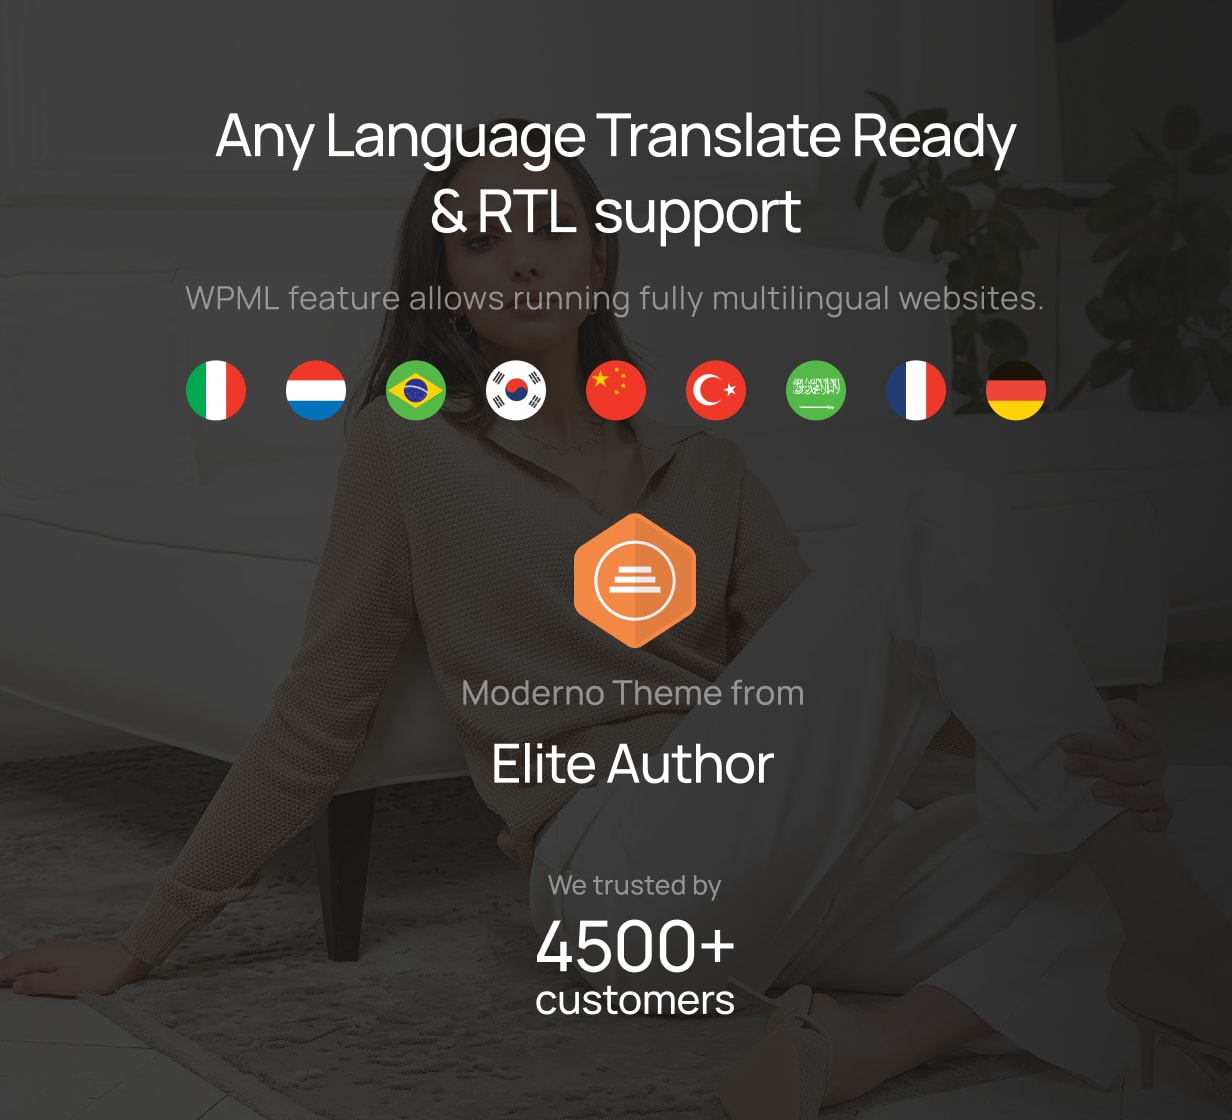 Moderno – Bereit für die Übersetzung in jede Sprache und RTL-Unterstützung